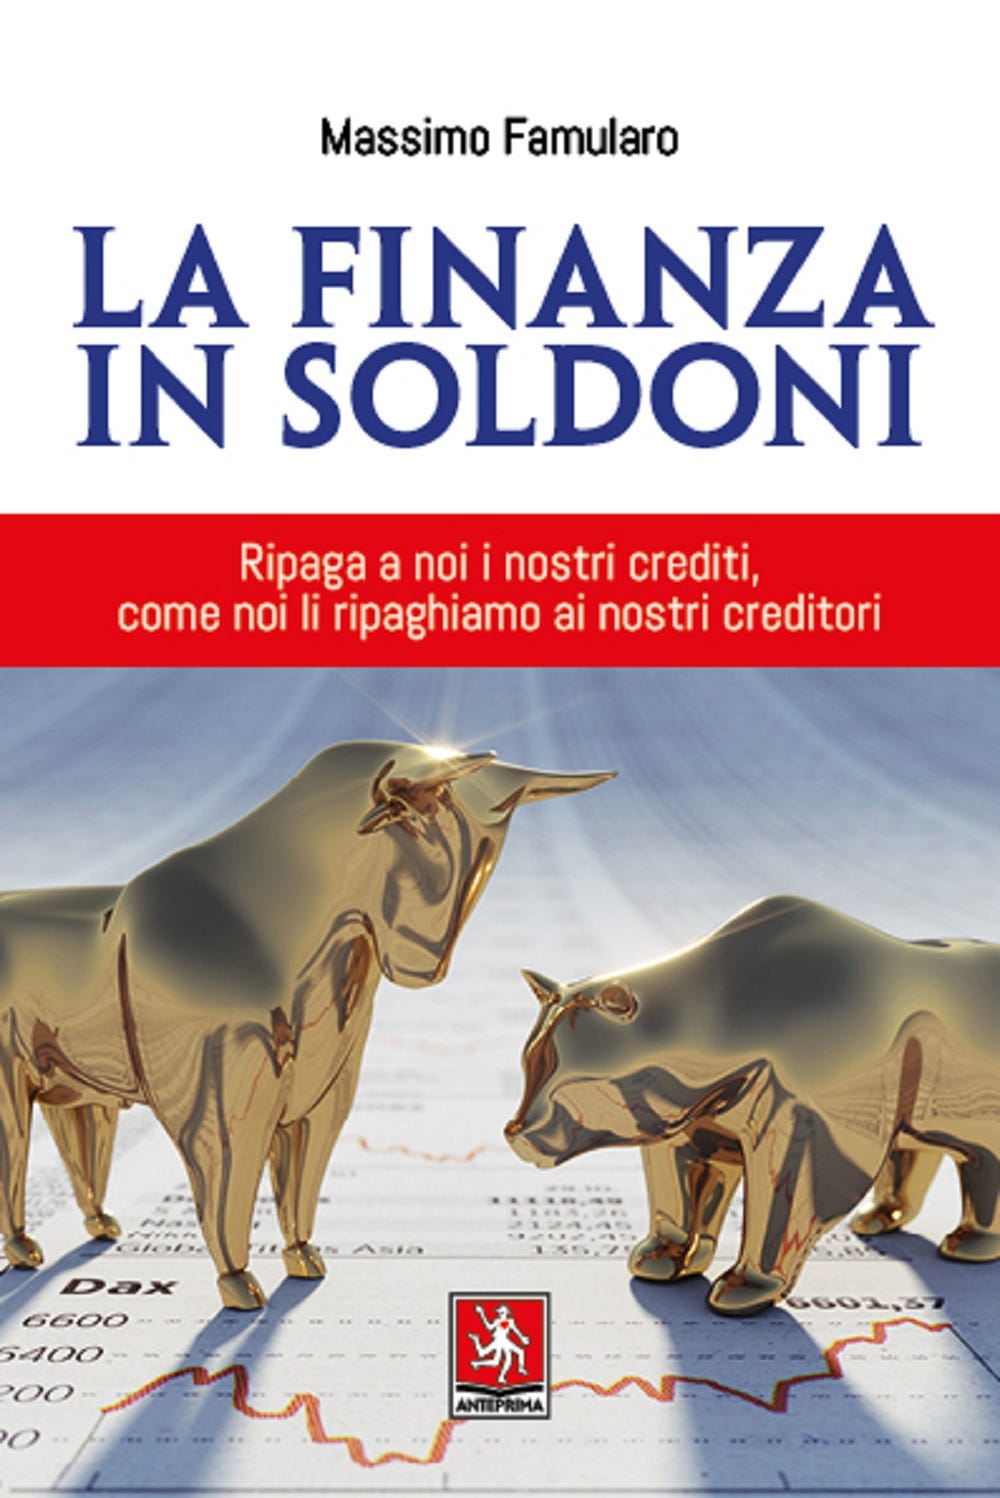 https://www.amazon.it/finanza-soldoni-Massimo-Famularo/dp/8868492458/